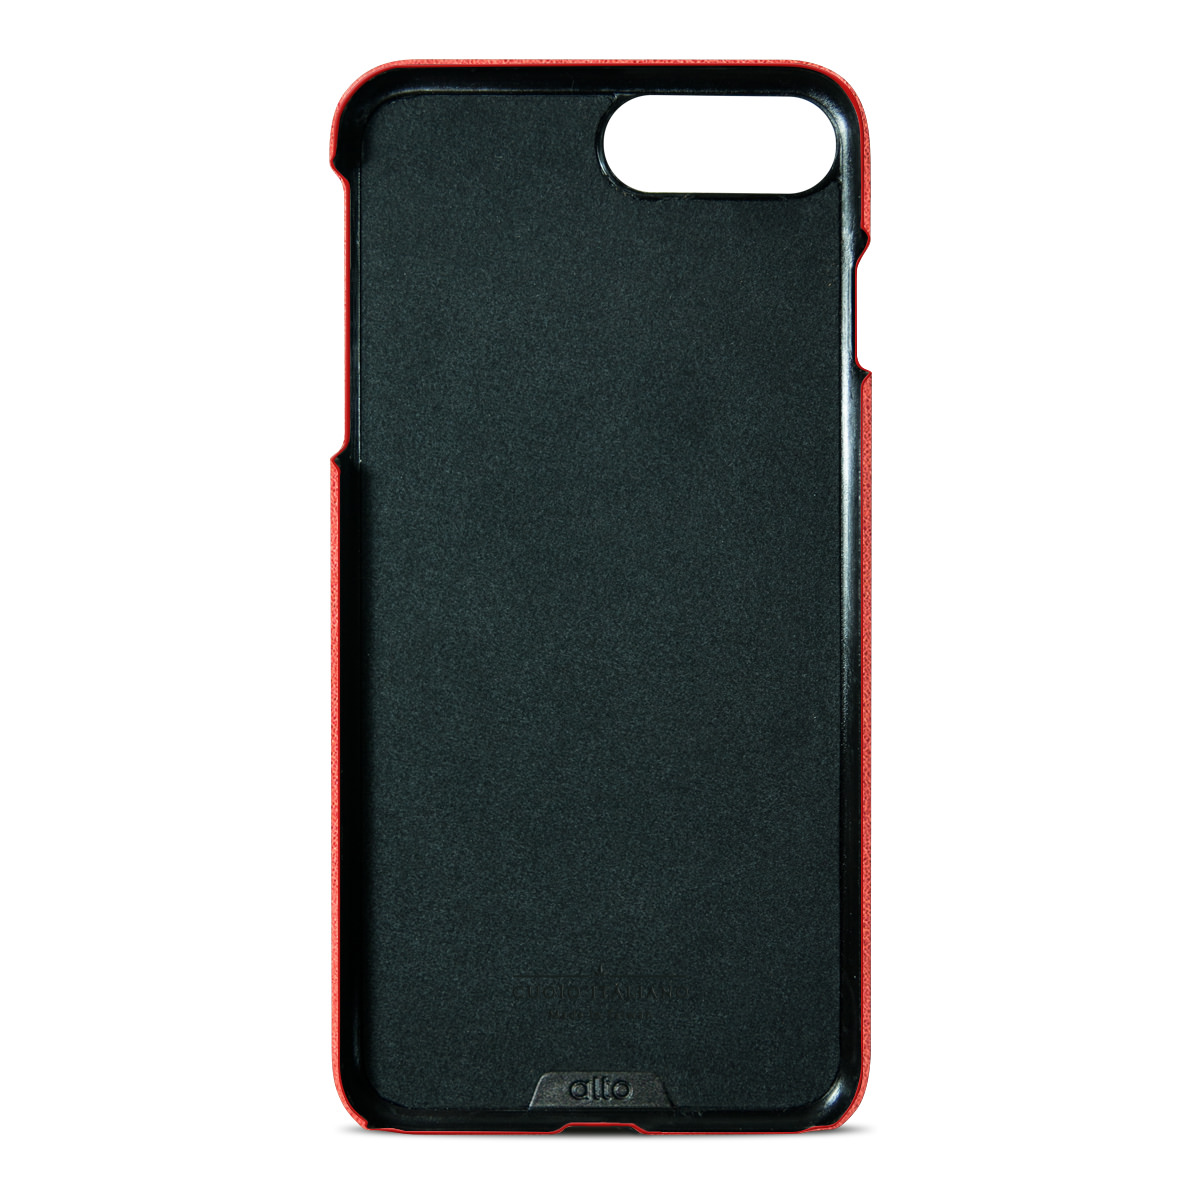 alto iPhone 7plus 真皮手機殼背蓋 Original (Coral)